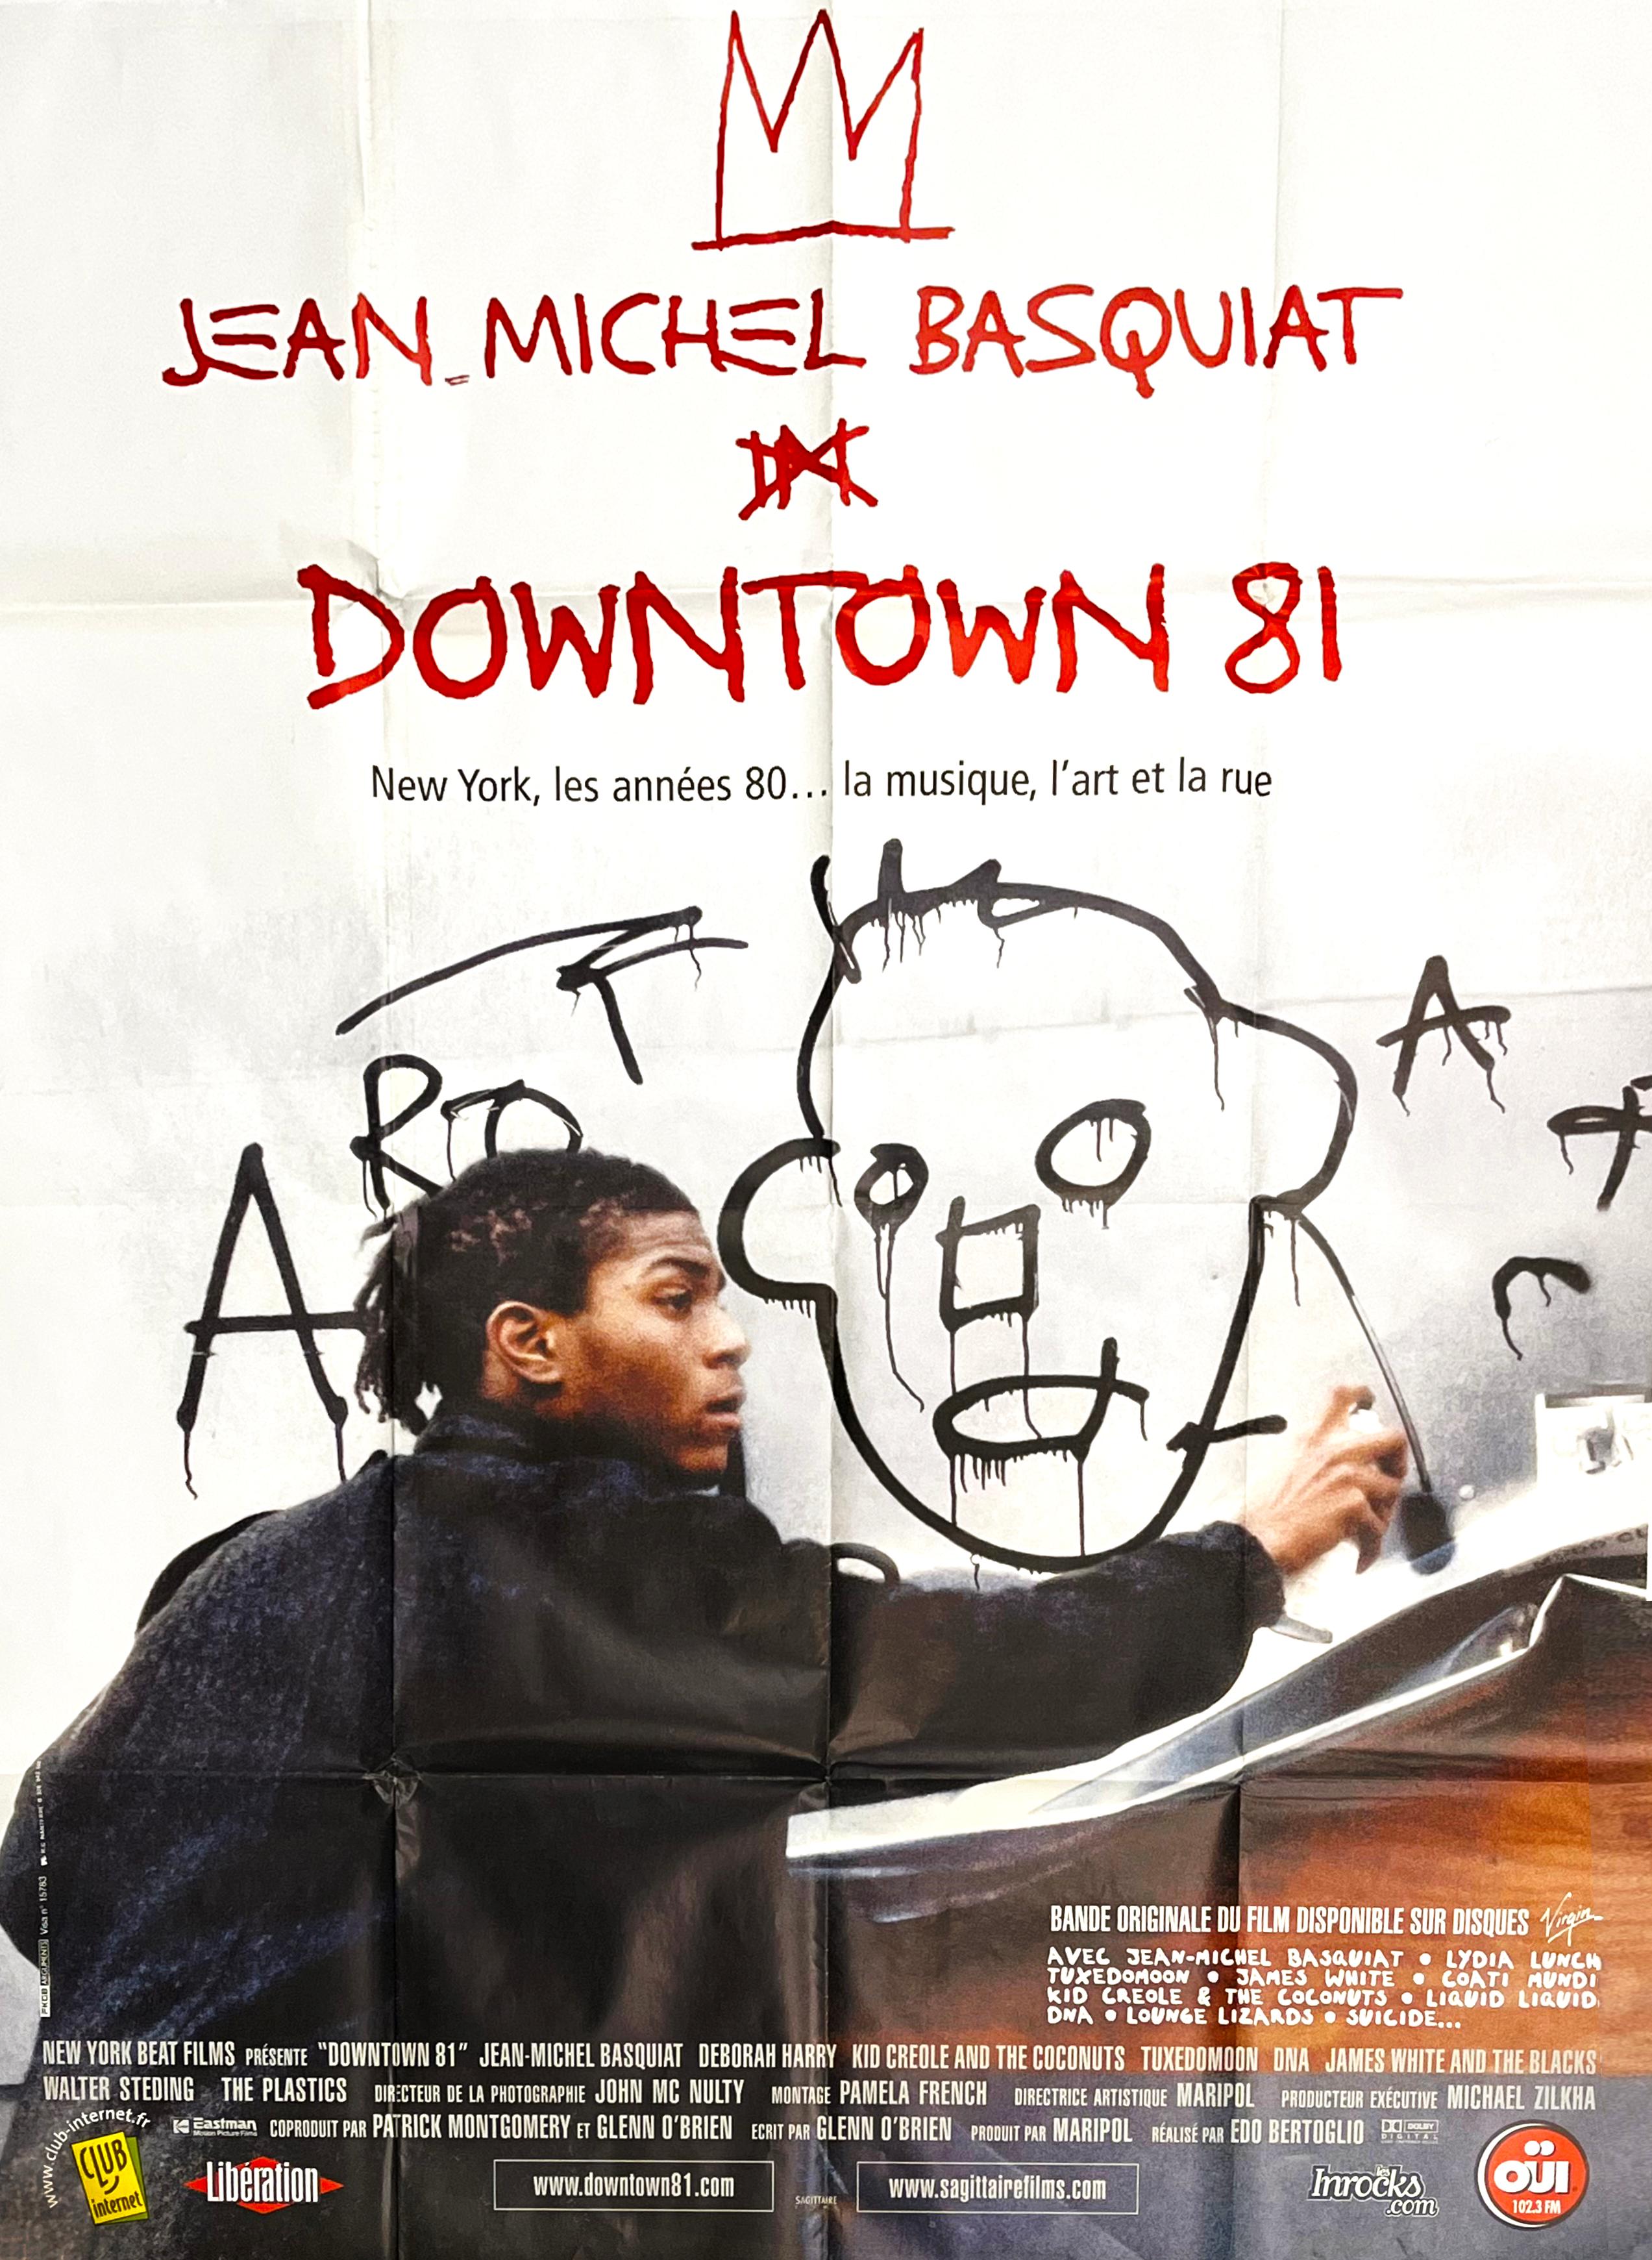 Basquiat Downtown 81 film poster (Basquiat movie)  - Pop Art Print by Jean-Michel Basquiat